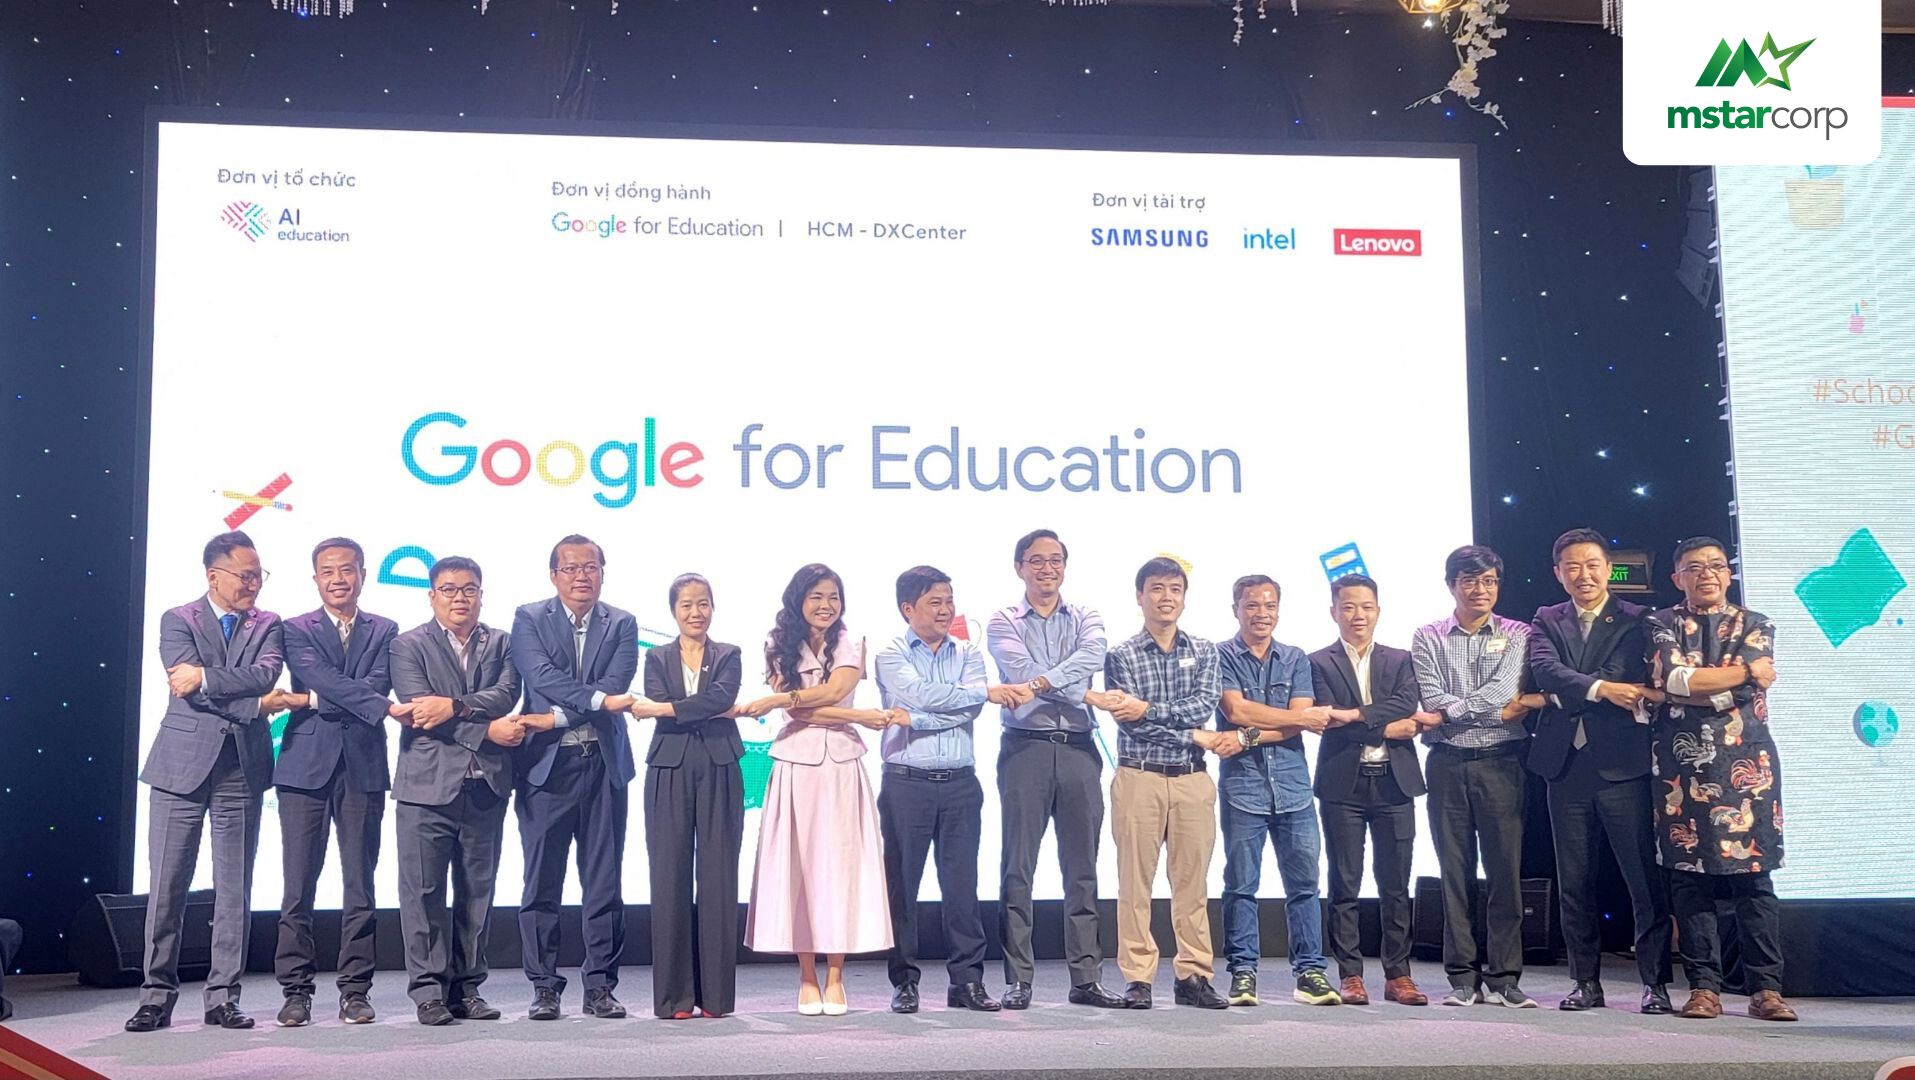 Mstar Corp - Đối tác chiến lược của AI Education và Google for Education